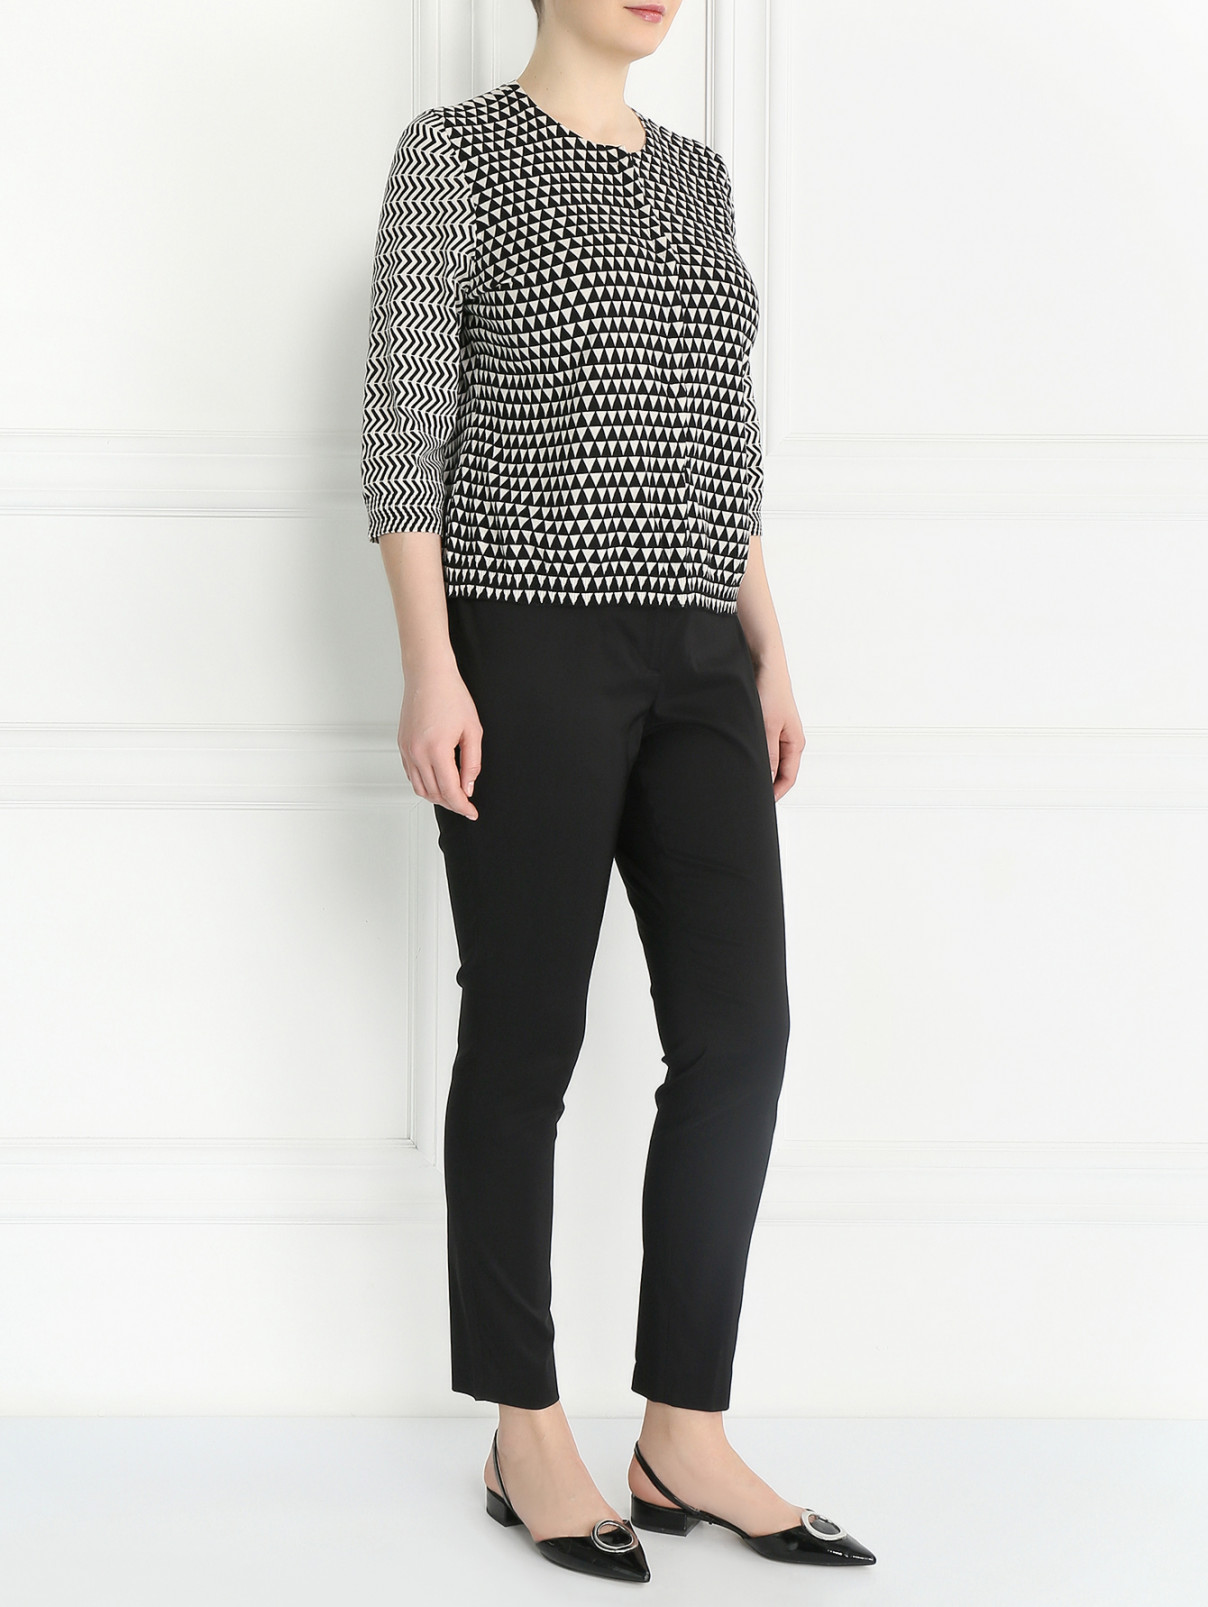 Зауженные брюки из хлопка Marina Rinaldi  –  Модель Общий вид  – Цвет:  Черный